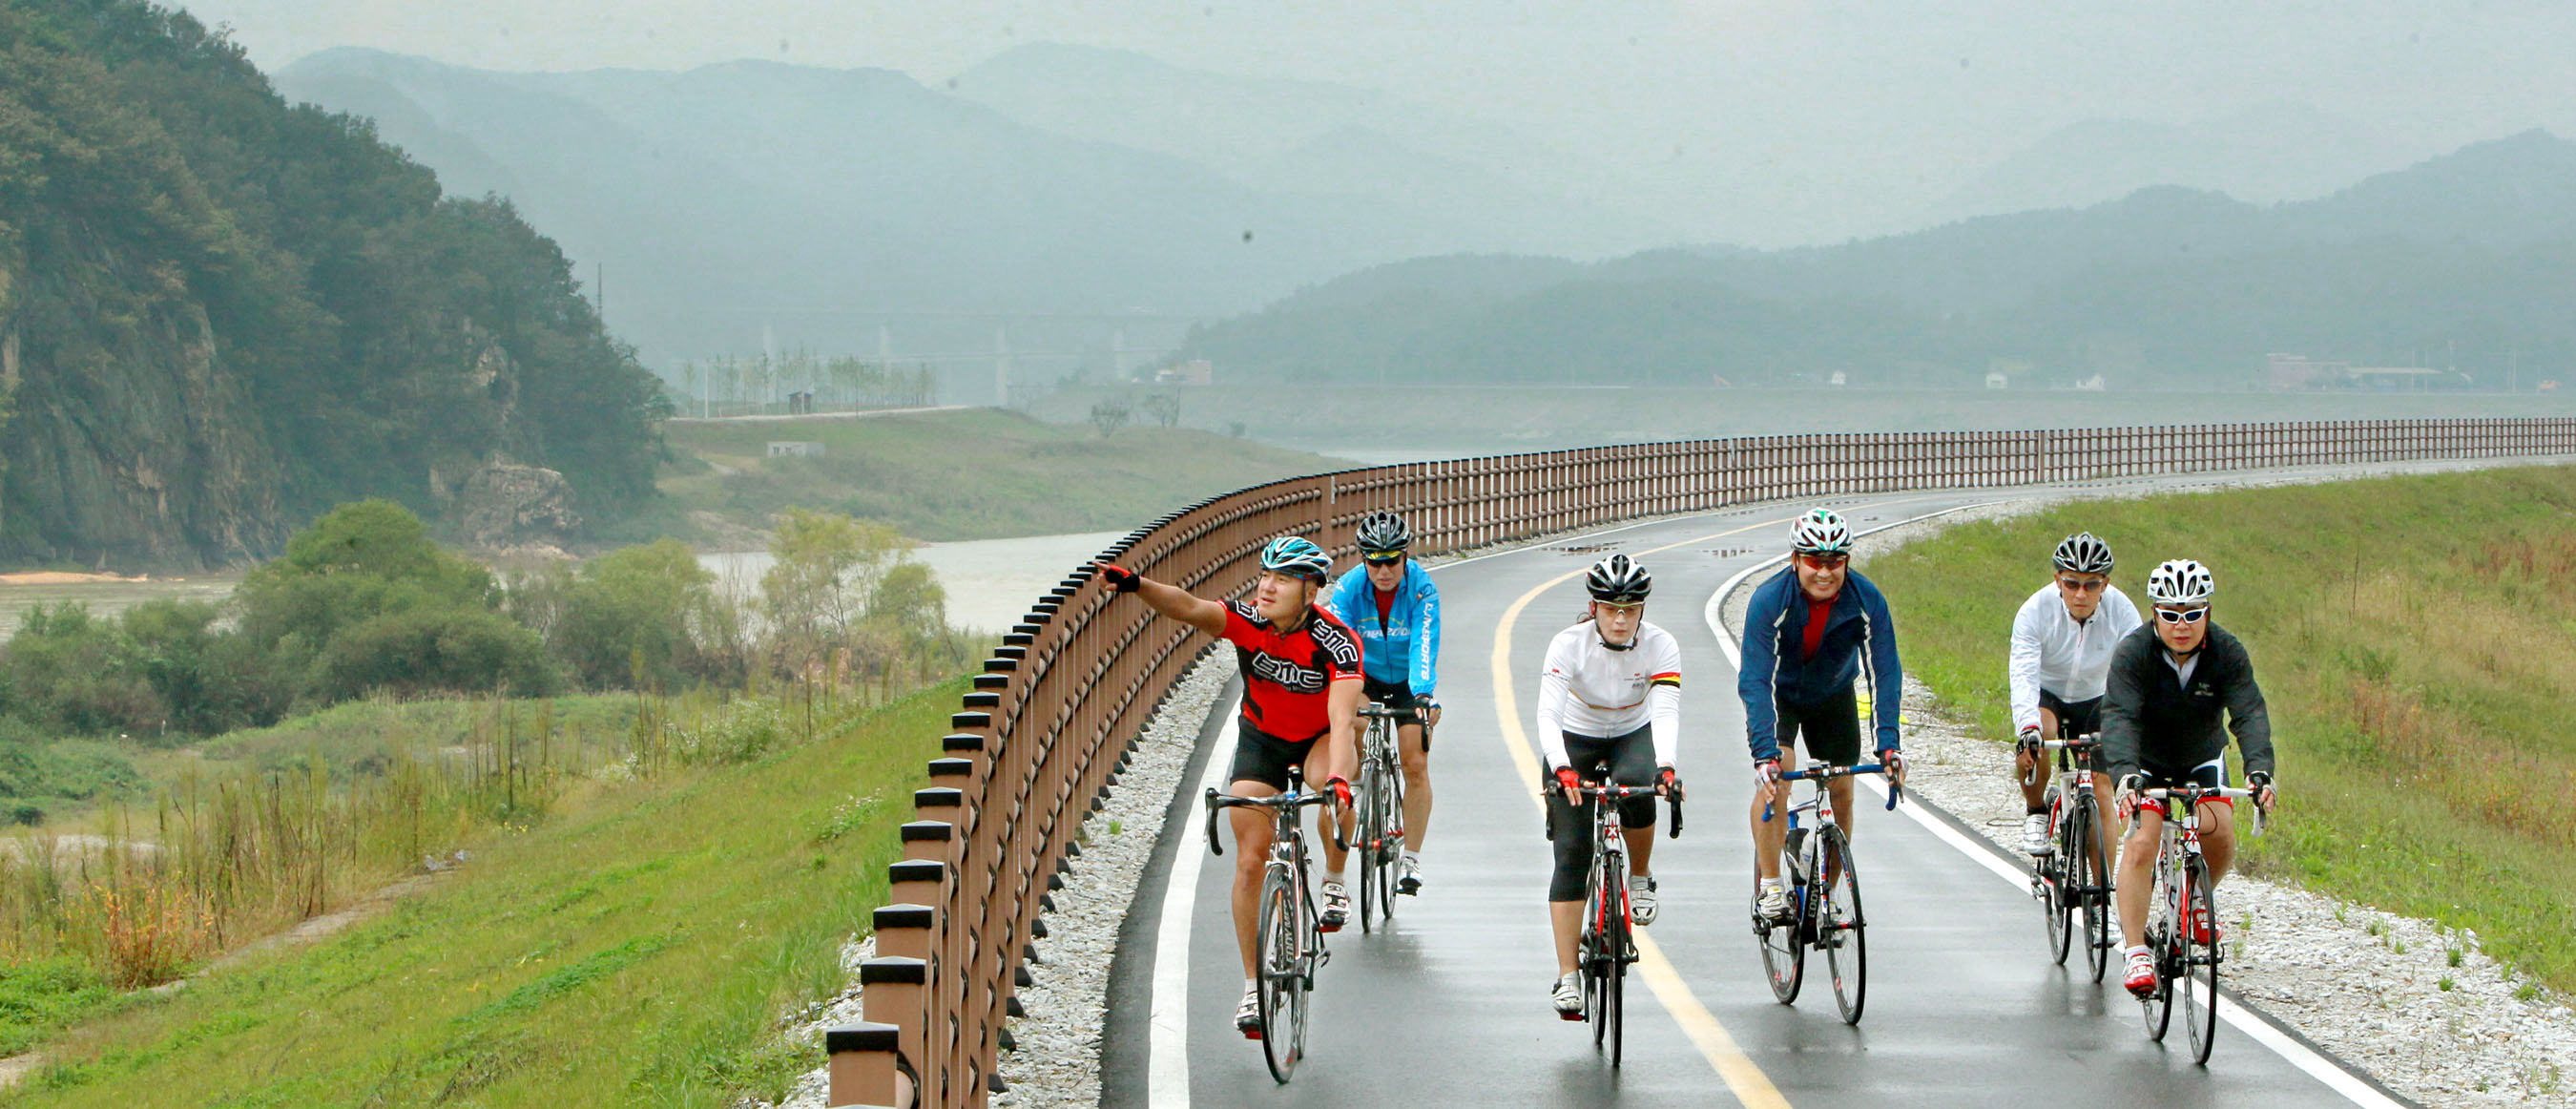 Đường xe đạp quốc gia ở Hàn Quốc, chỉ dành cho người đi xe đạp và vô cùng an toàn.